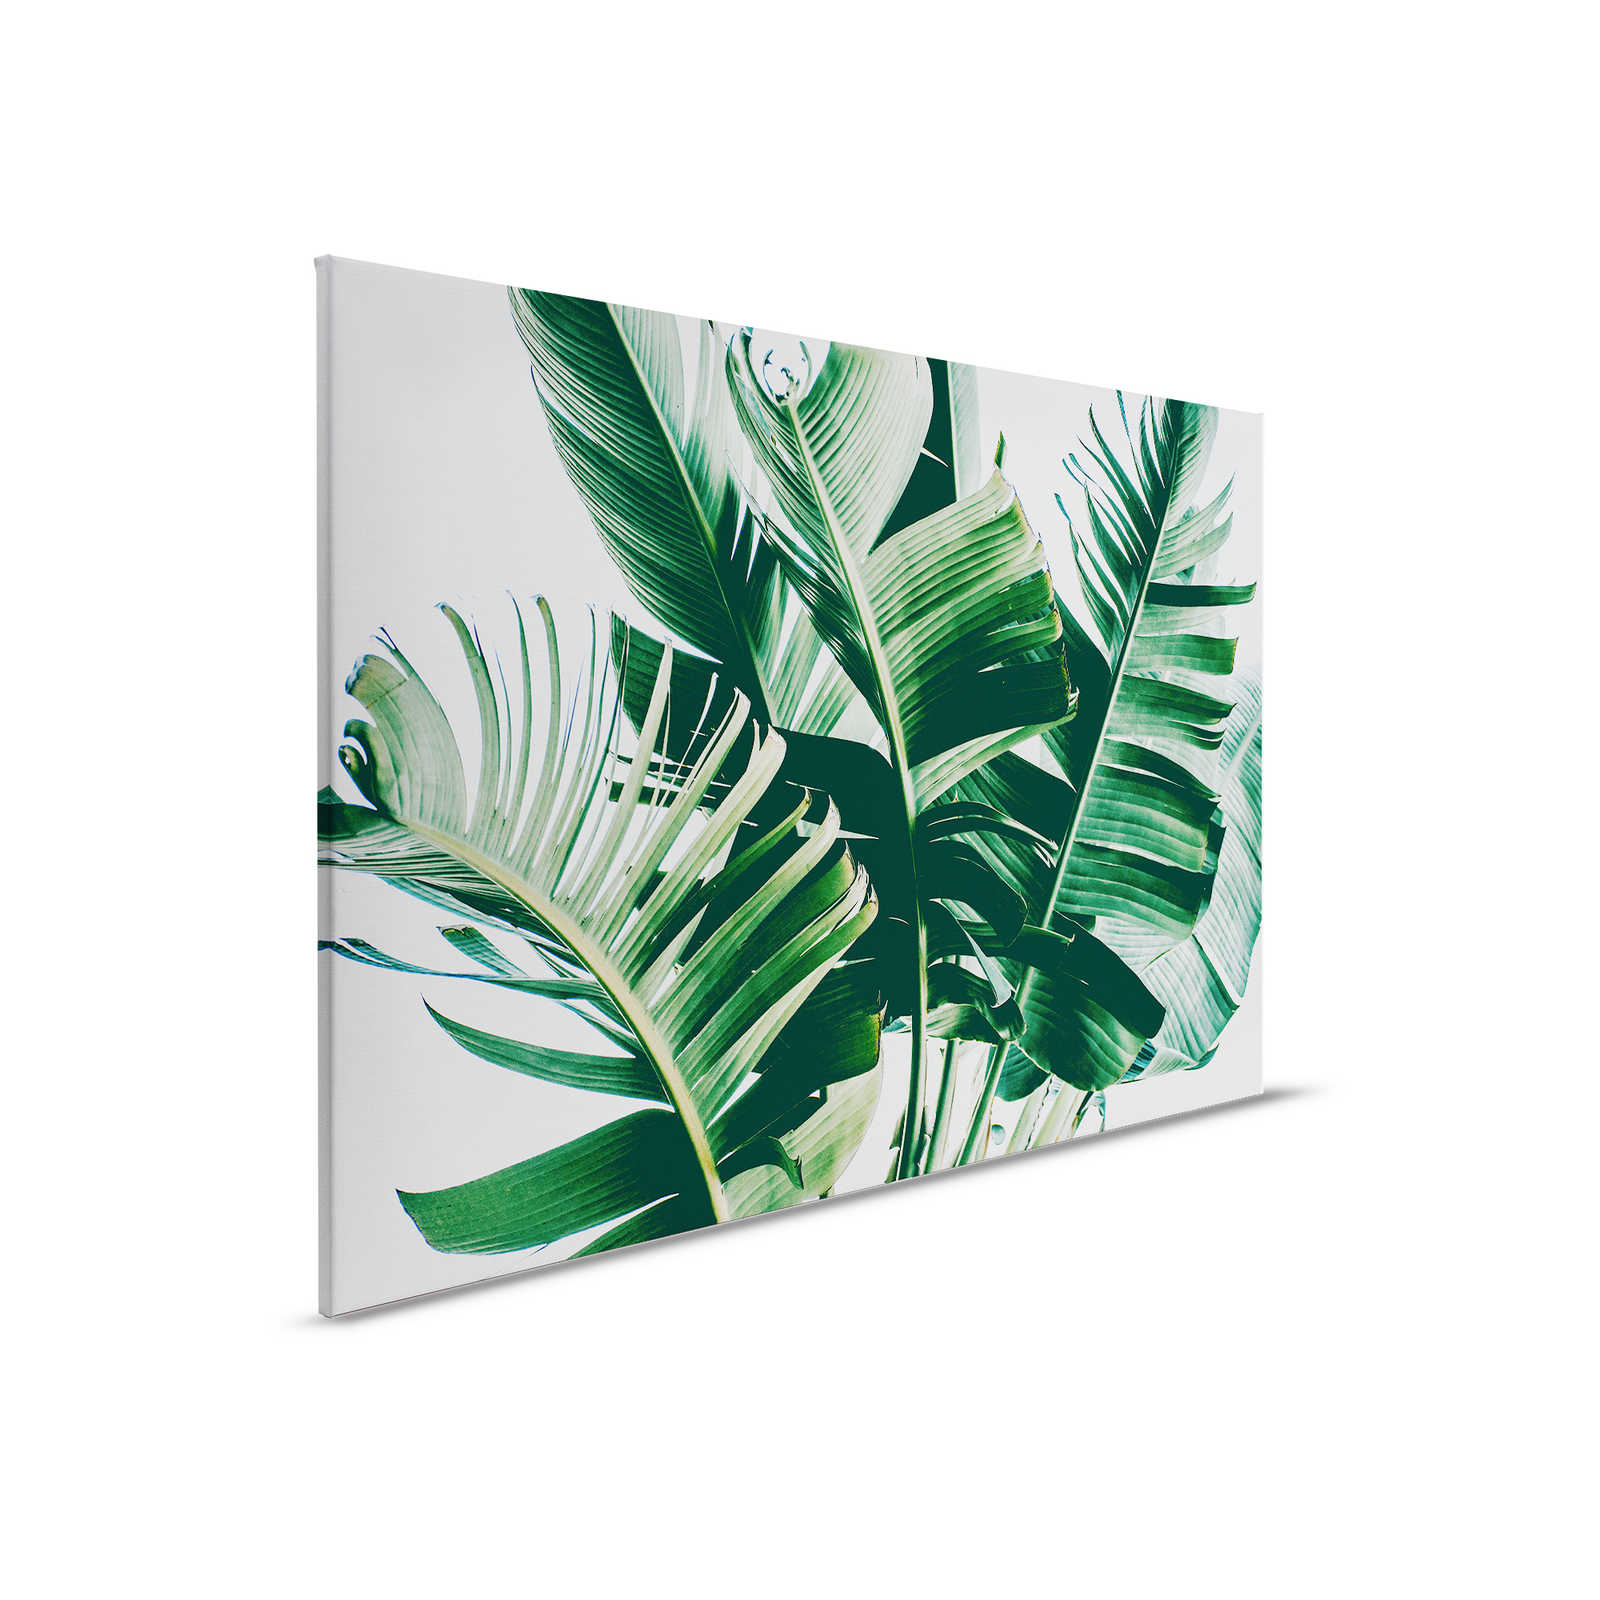 Leinwandbild mit Palmenblättern natürliches Motiv – 0,90 m x 0,60 m
